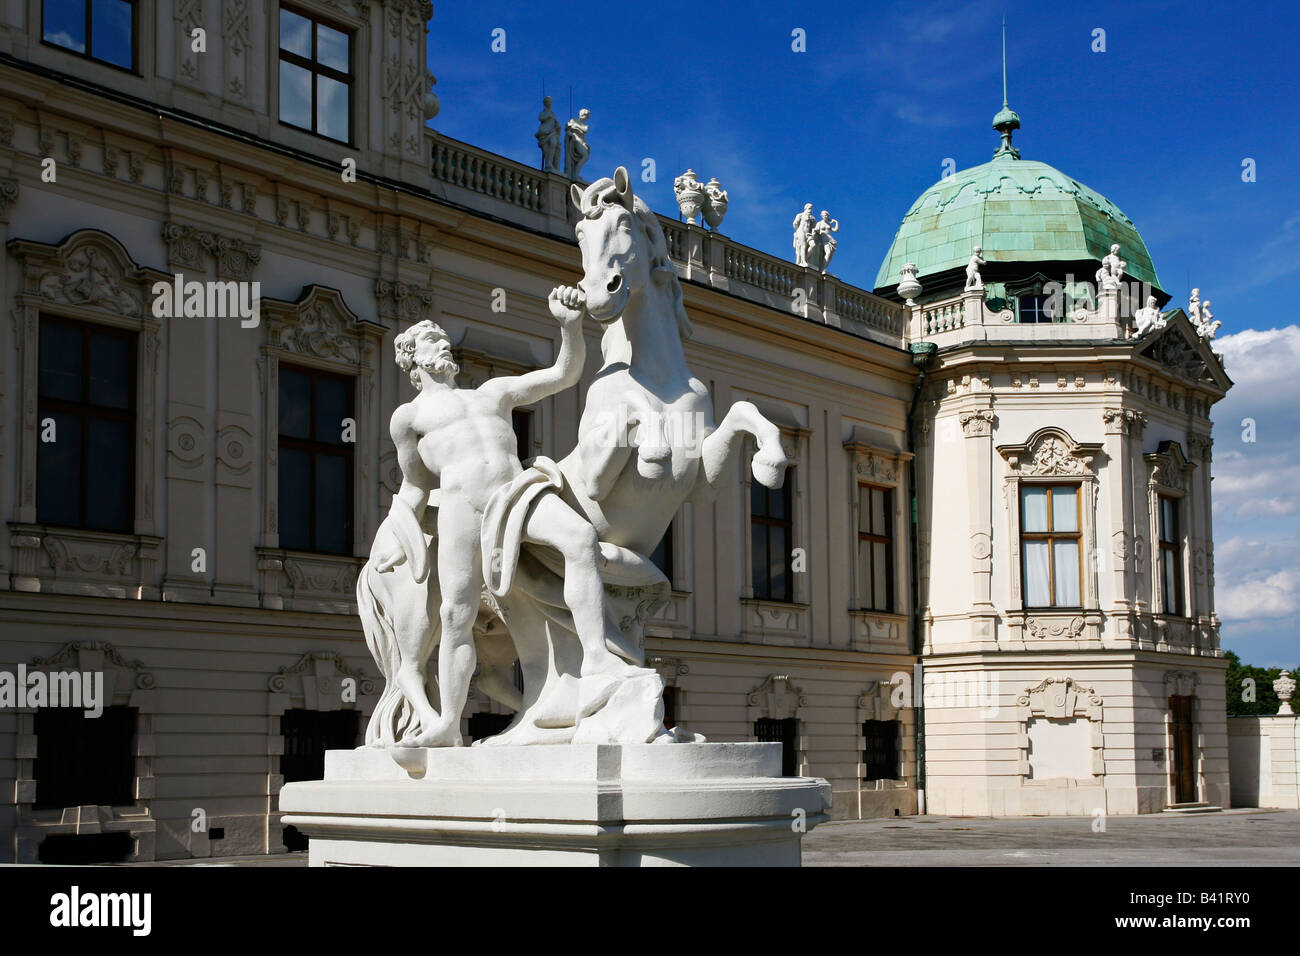 Oberes Belvedere Vienna Austria Foto de stock